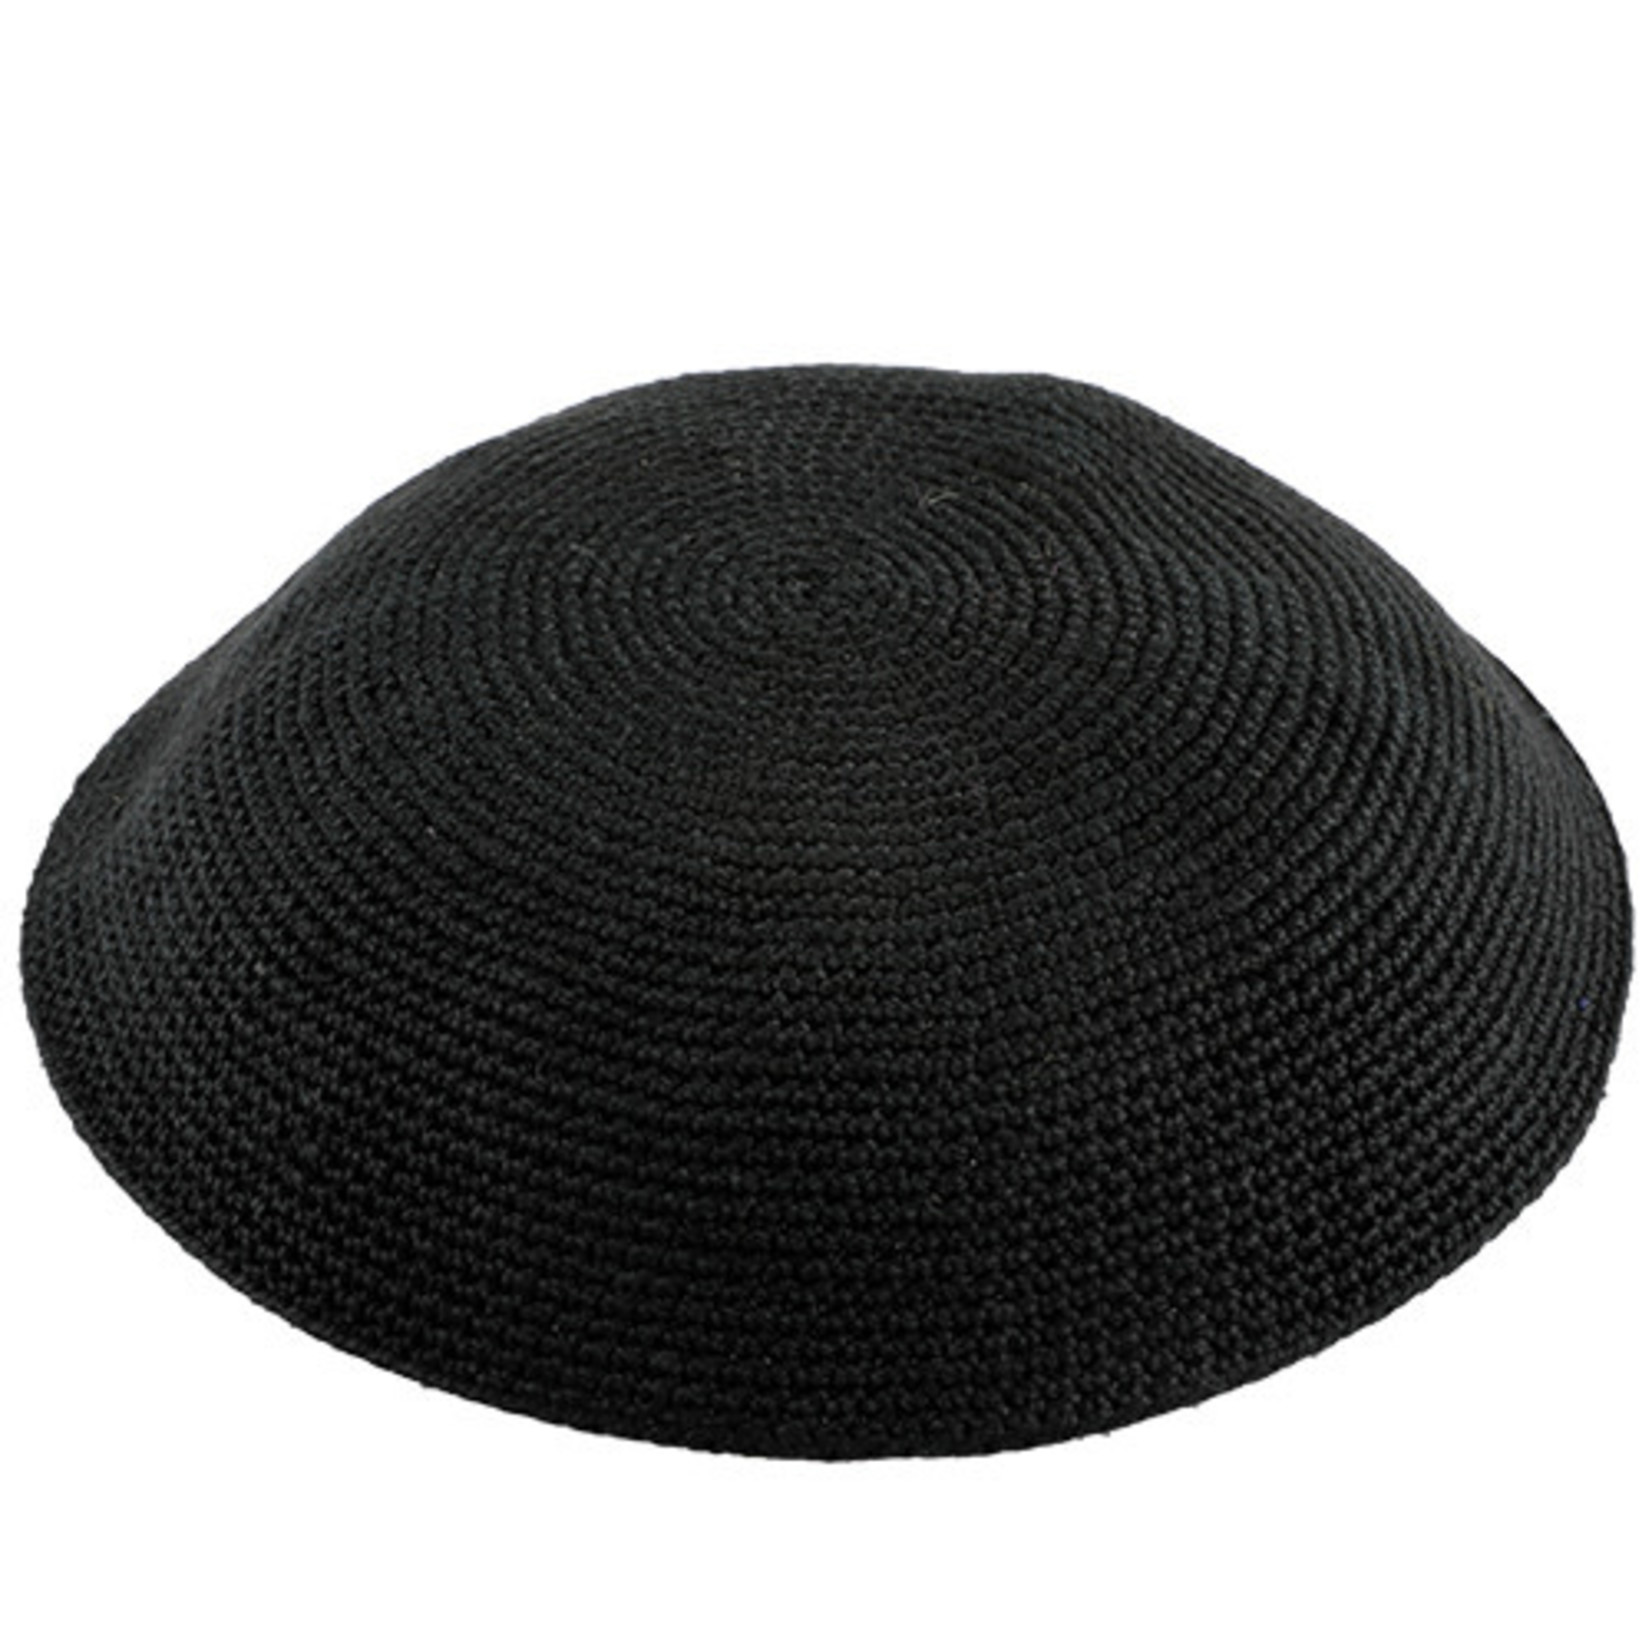 DMC Knit Kippah, Black, 18cm